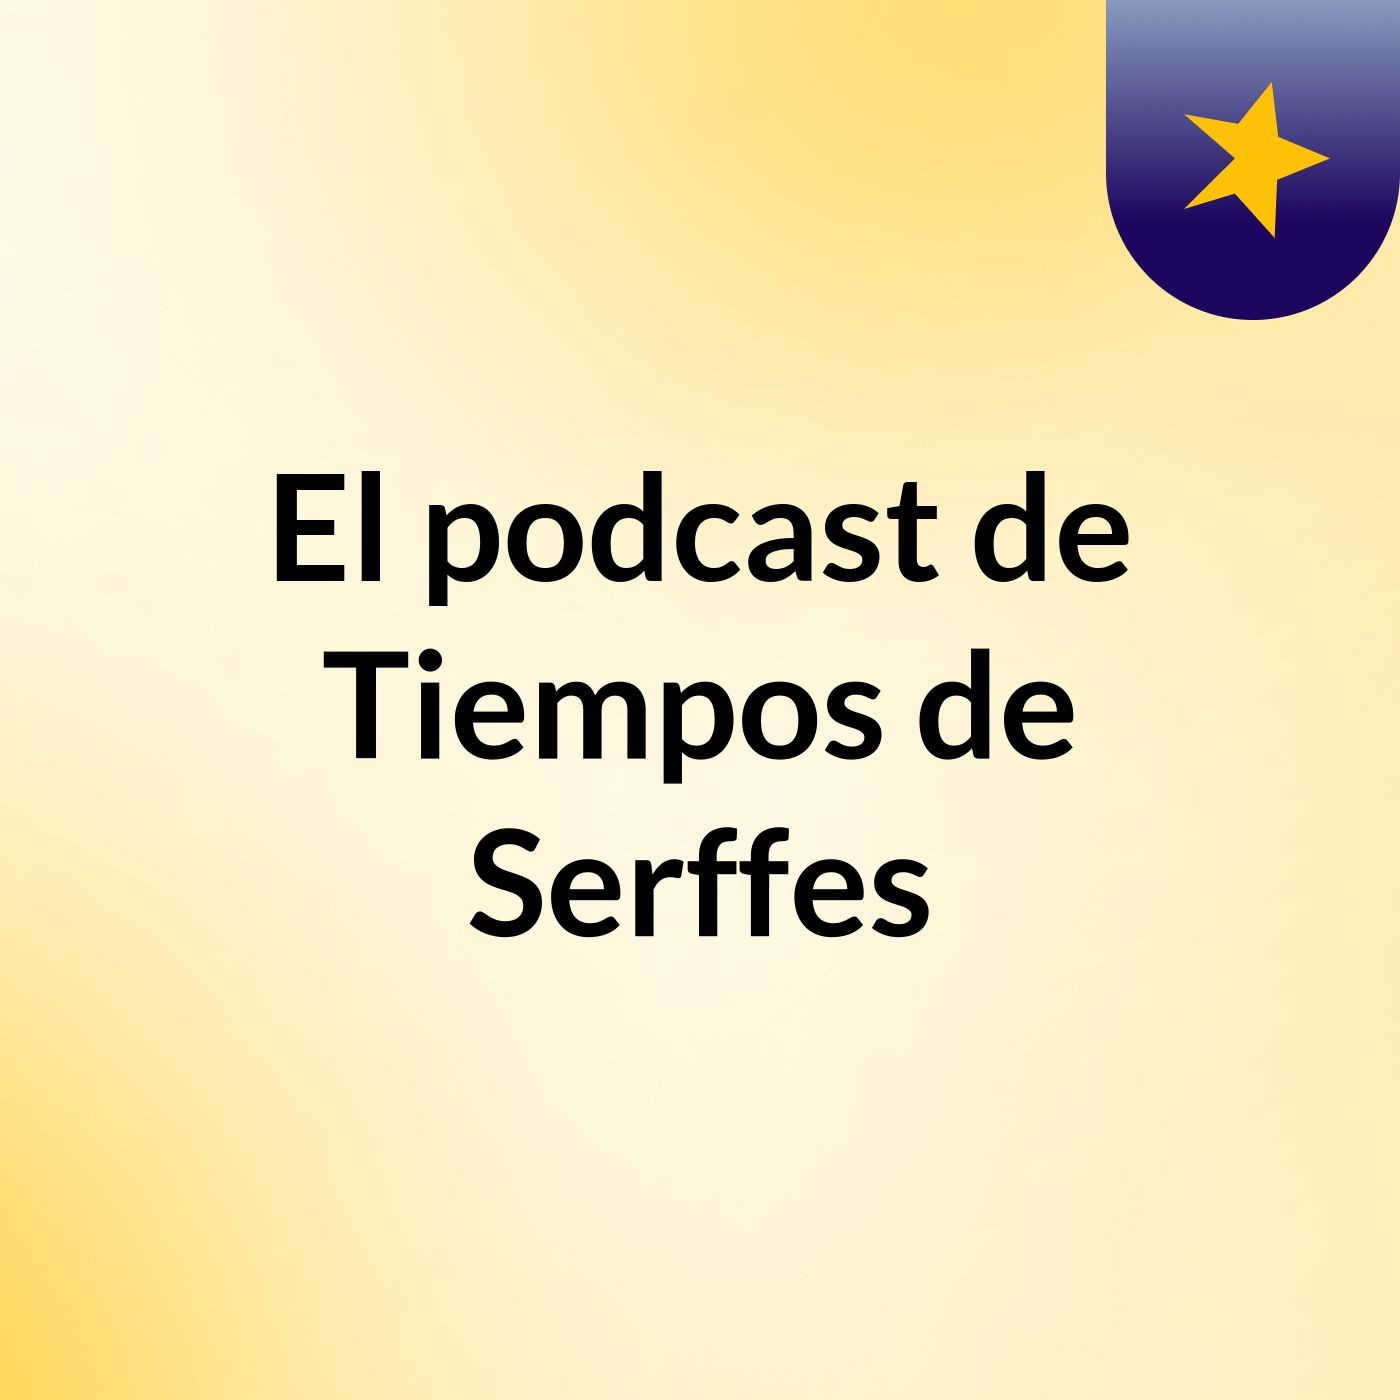 Episodio 4 - El podcast de Tiempos de Serffes